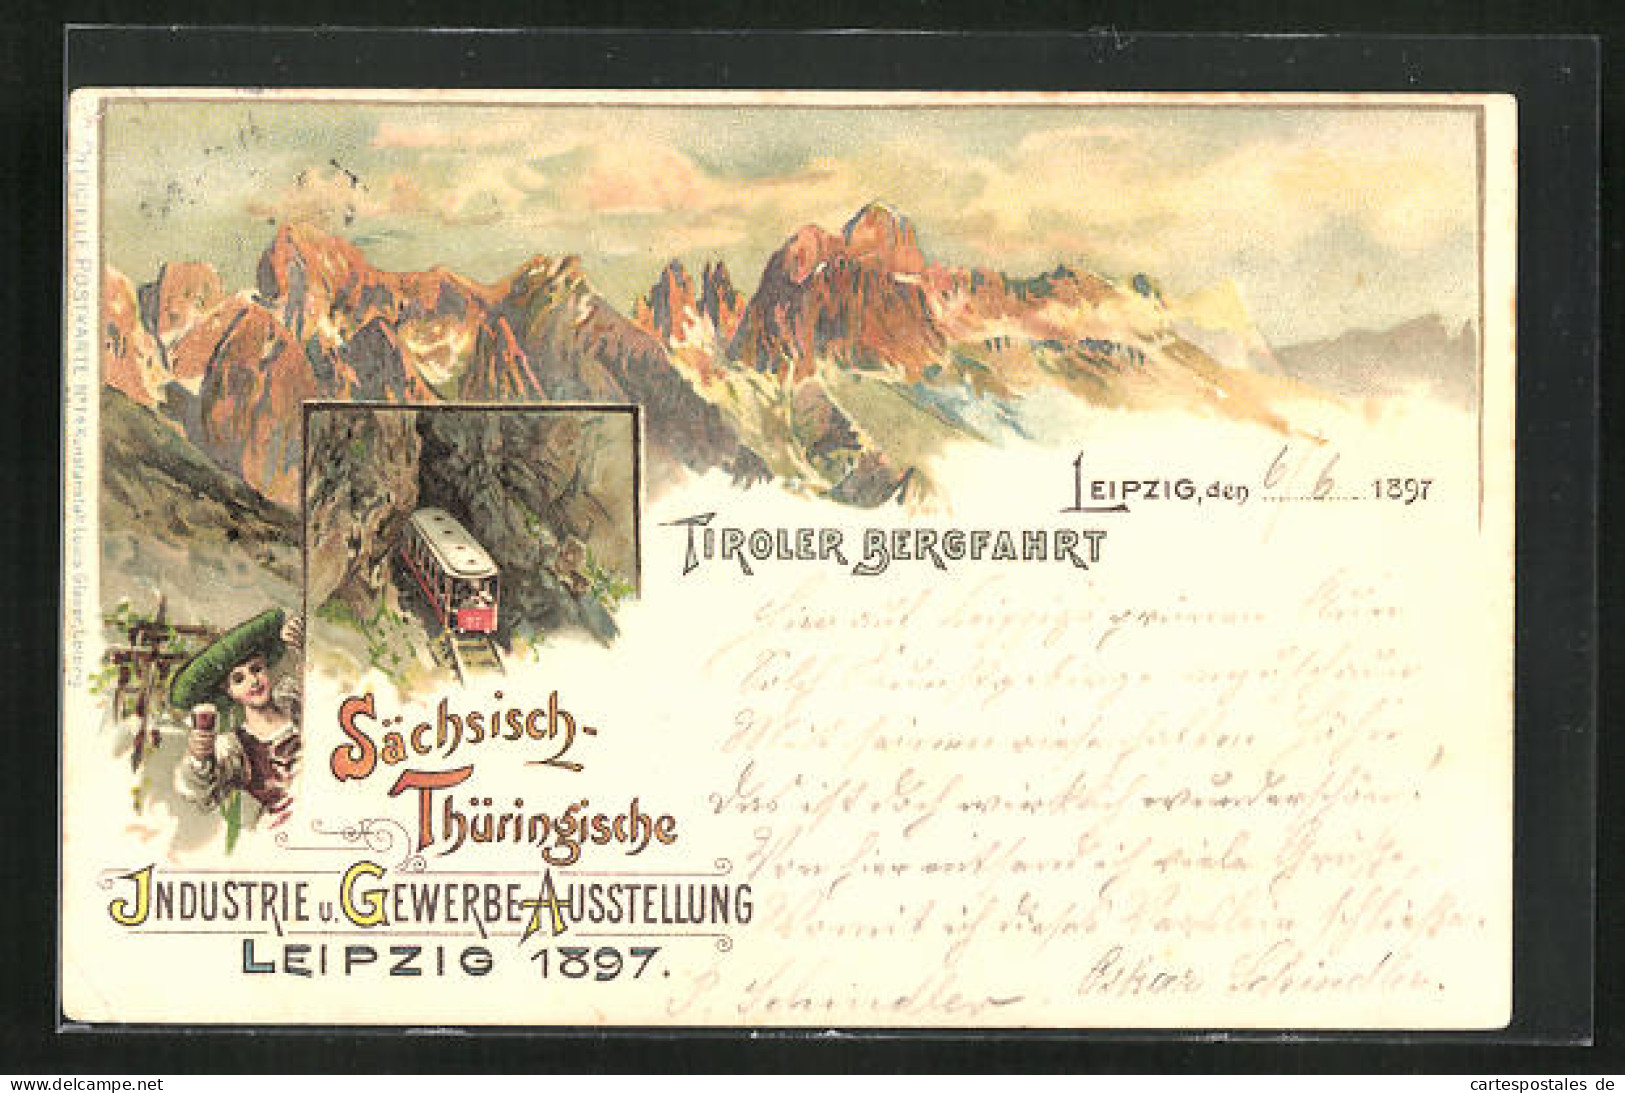 Lithographie Leipzig, Sächsisch-Thüringische Industrie-u. Gewerbe-Ausstellung 1897, Tiroler Bergfahrt  - Tentoonstellingen